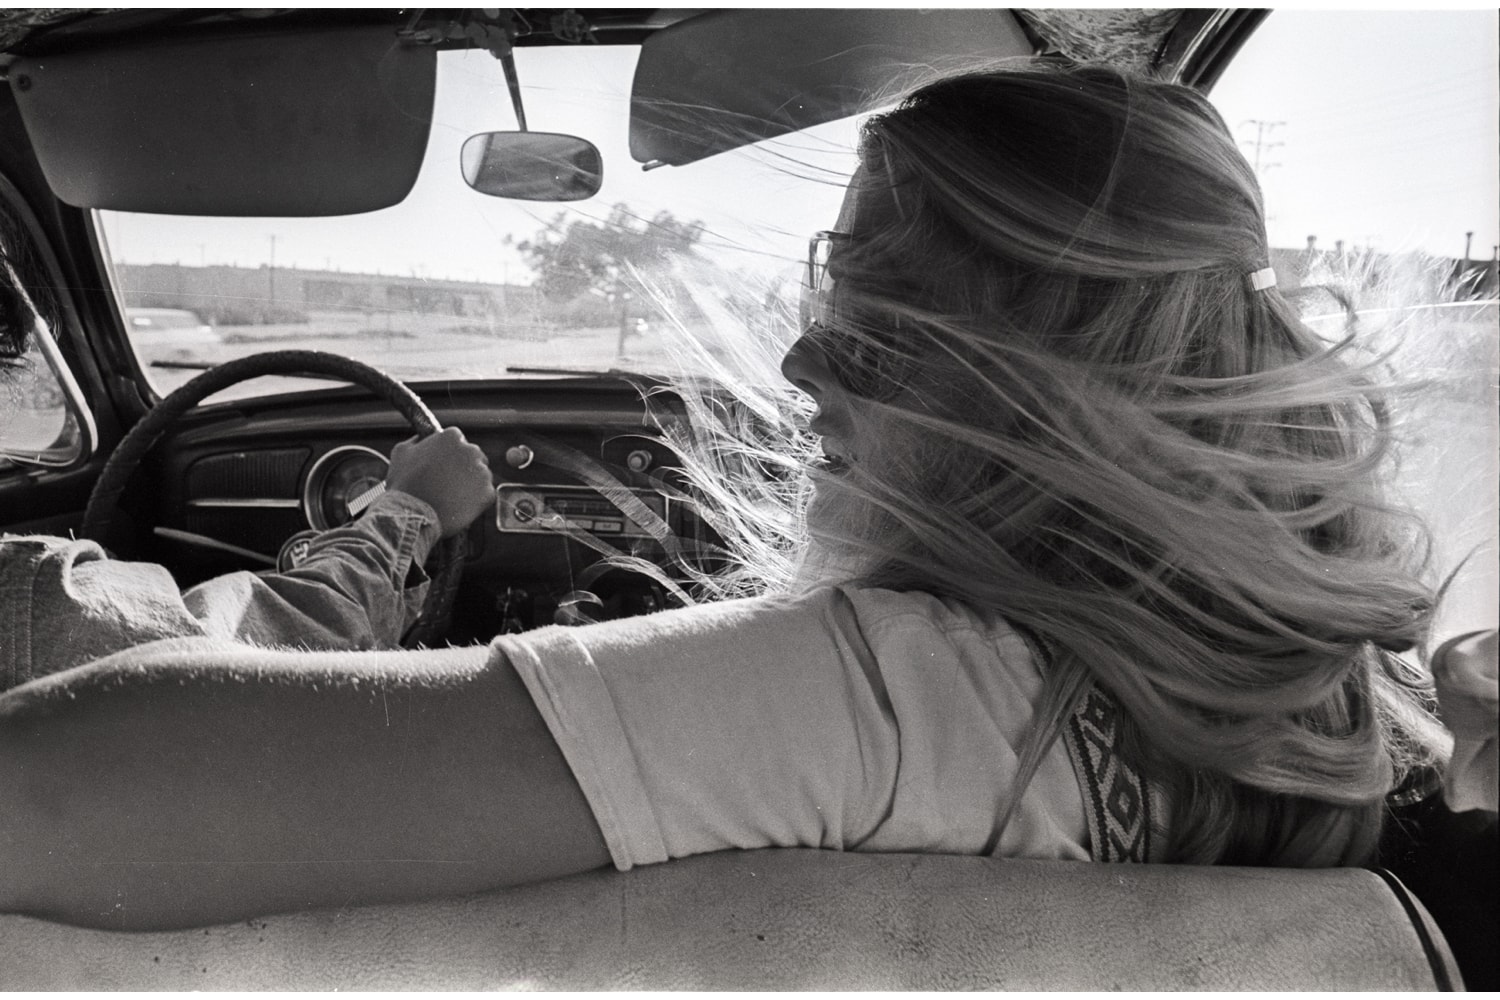 小林昭写真展 “Back On The Highway” で感じる40年前のアメリカ